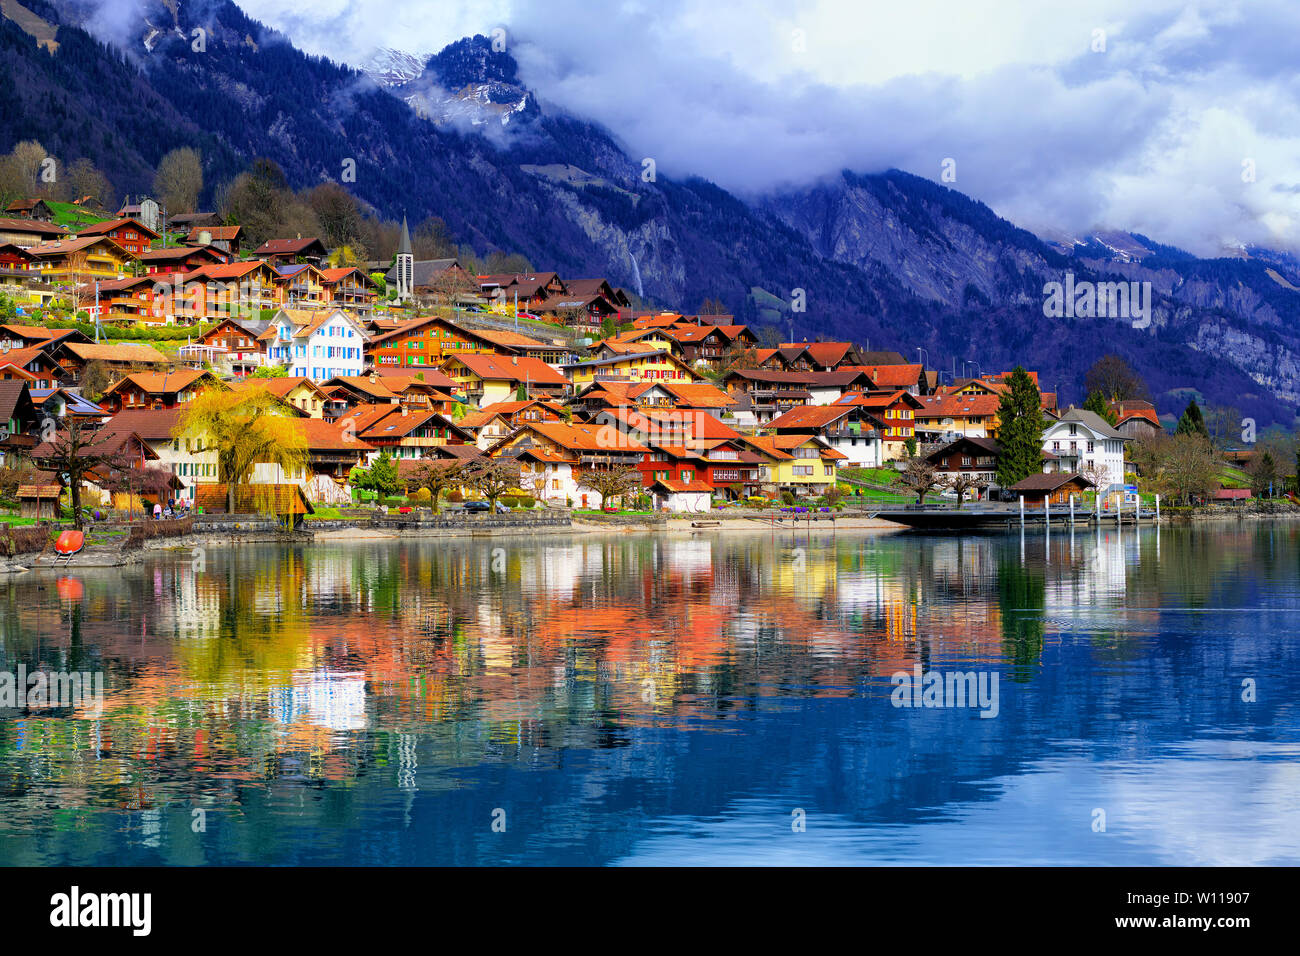 Vieille ville de Oberried, Brienz, Interlaken et misty alpes reflétant dans le lac, Suisse Banque D'Images